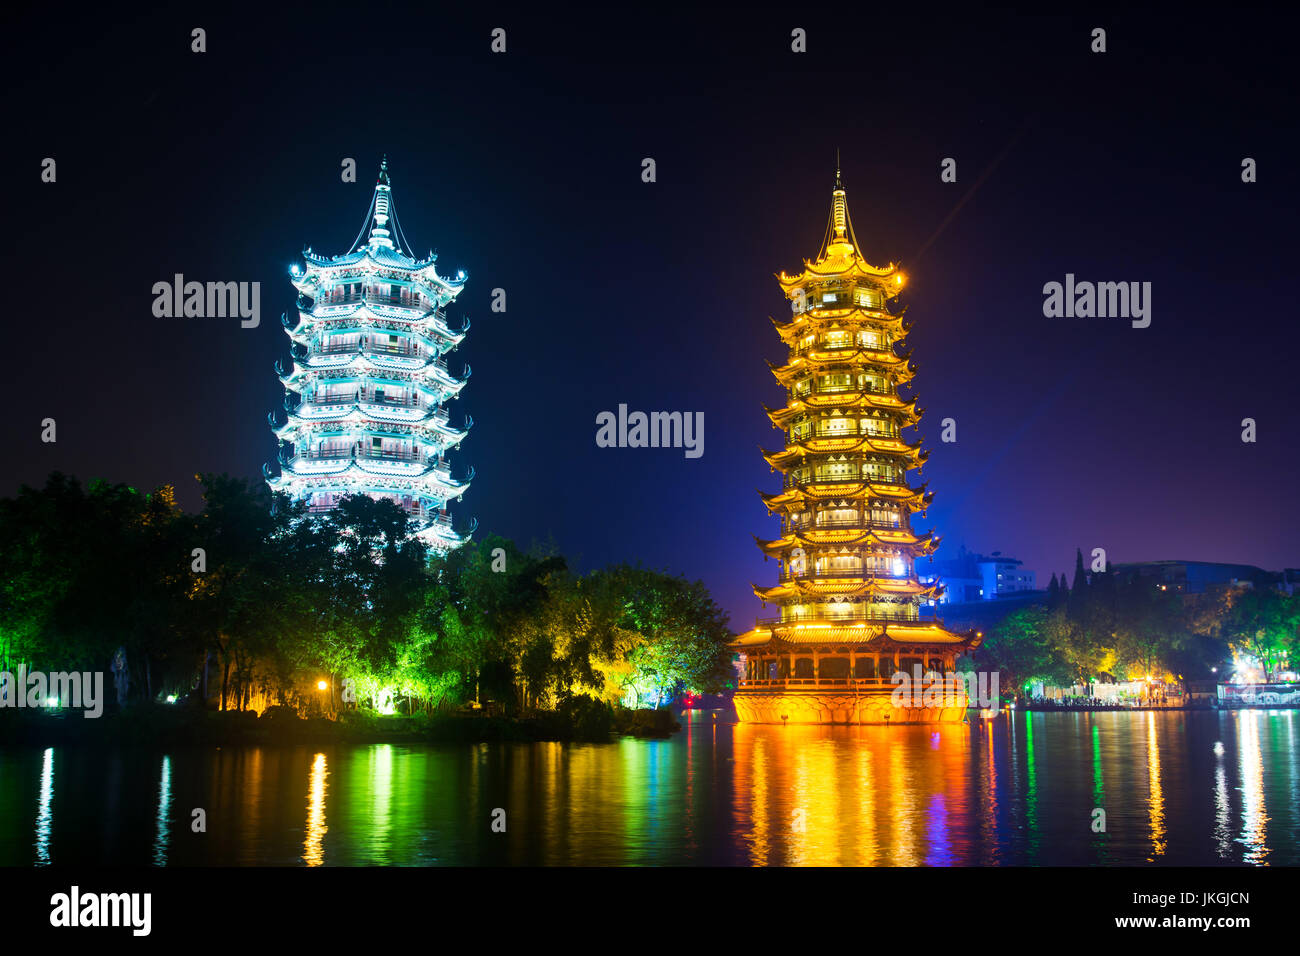 Guilin torres gemelas en el parque de la ciudad iluminada en Guangxi, China Foto de stock